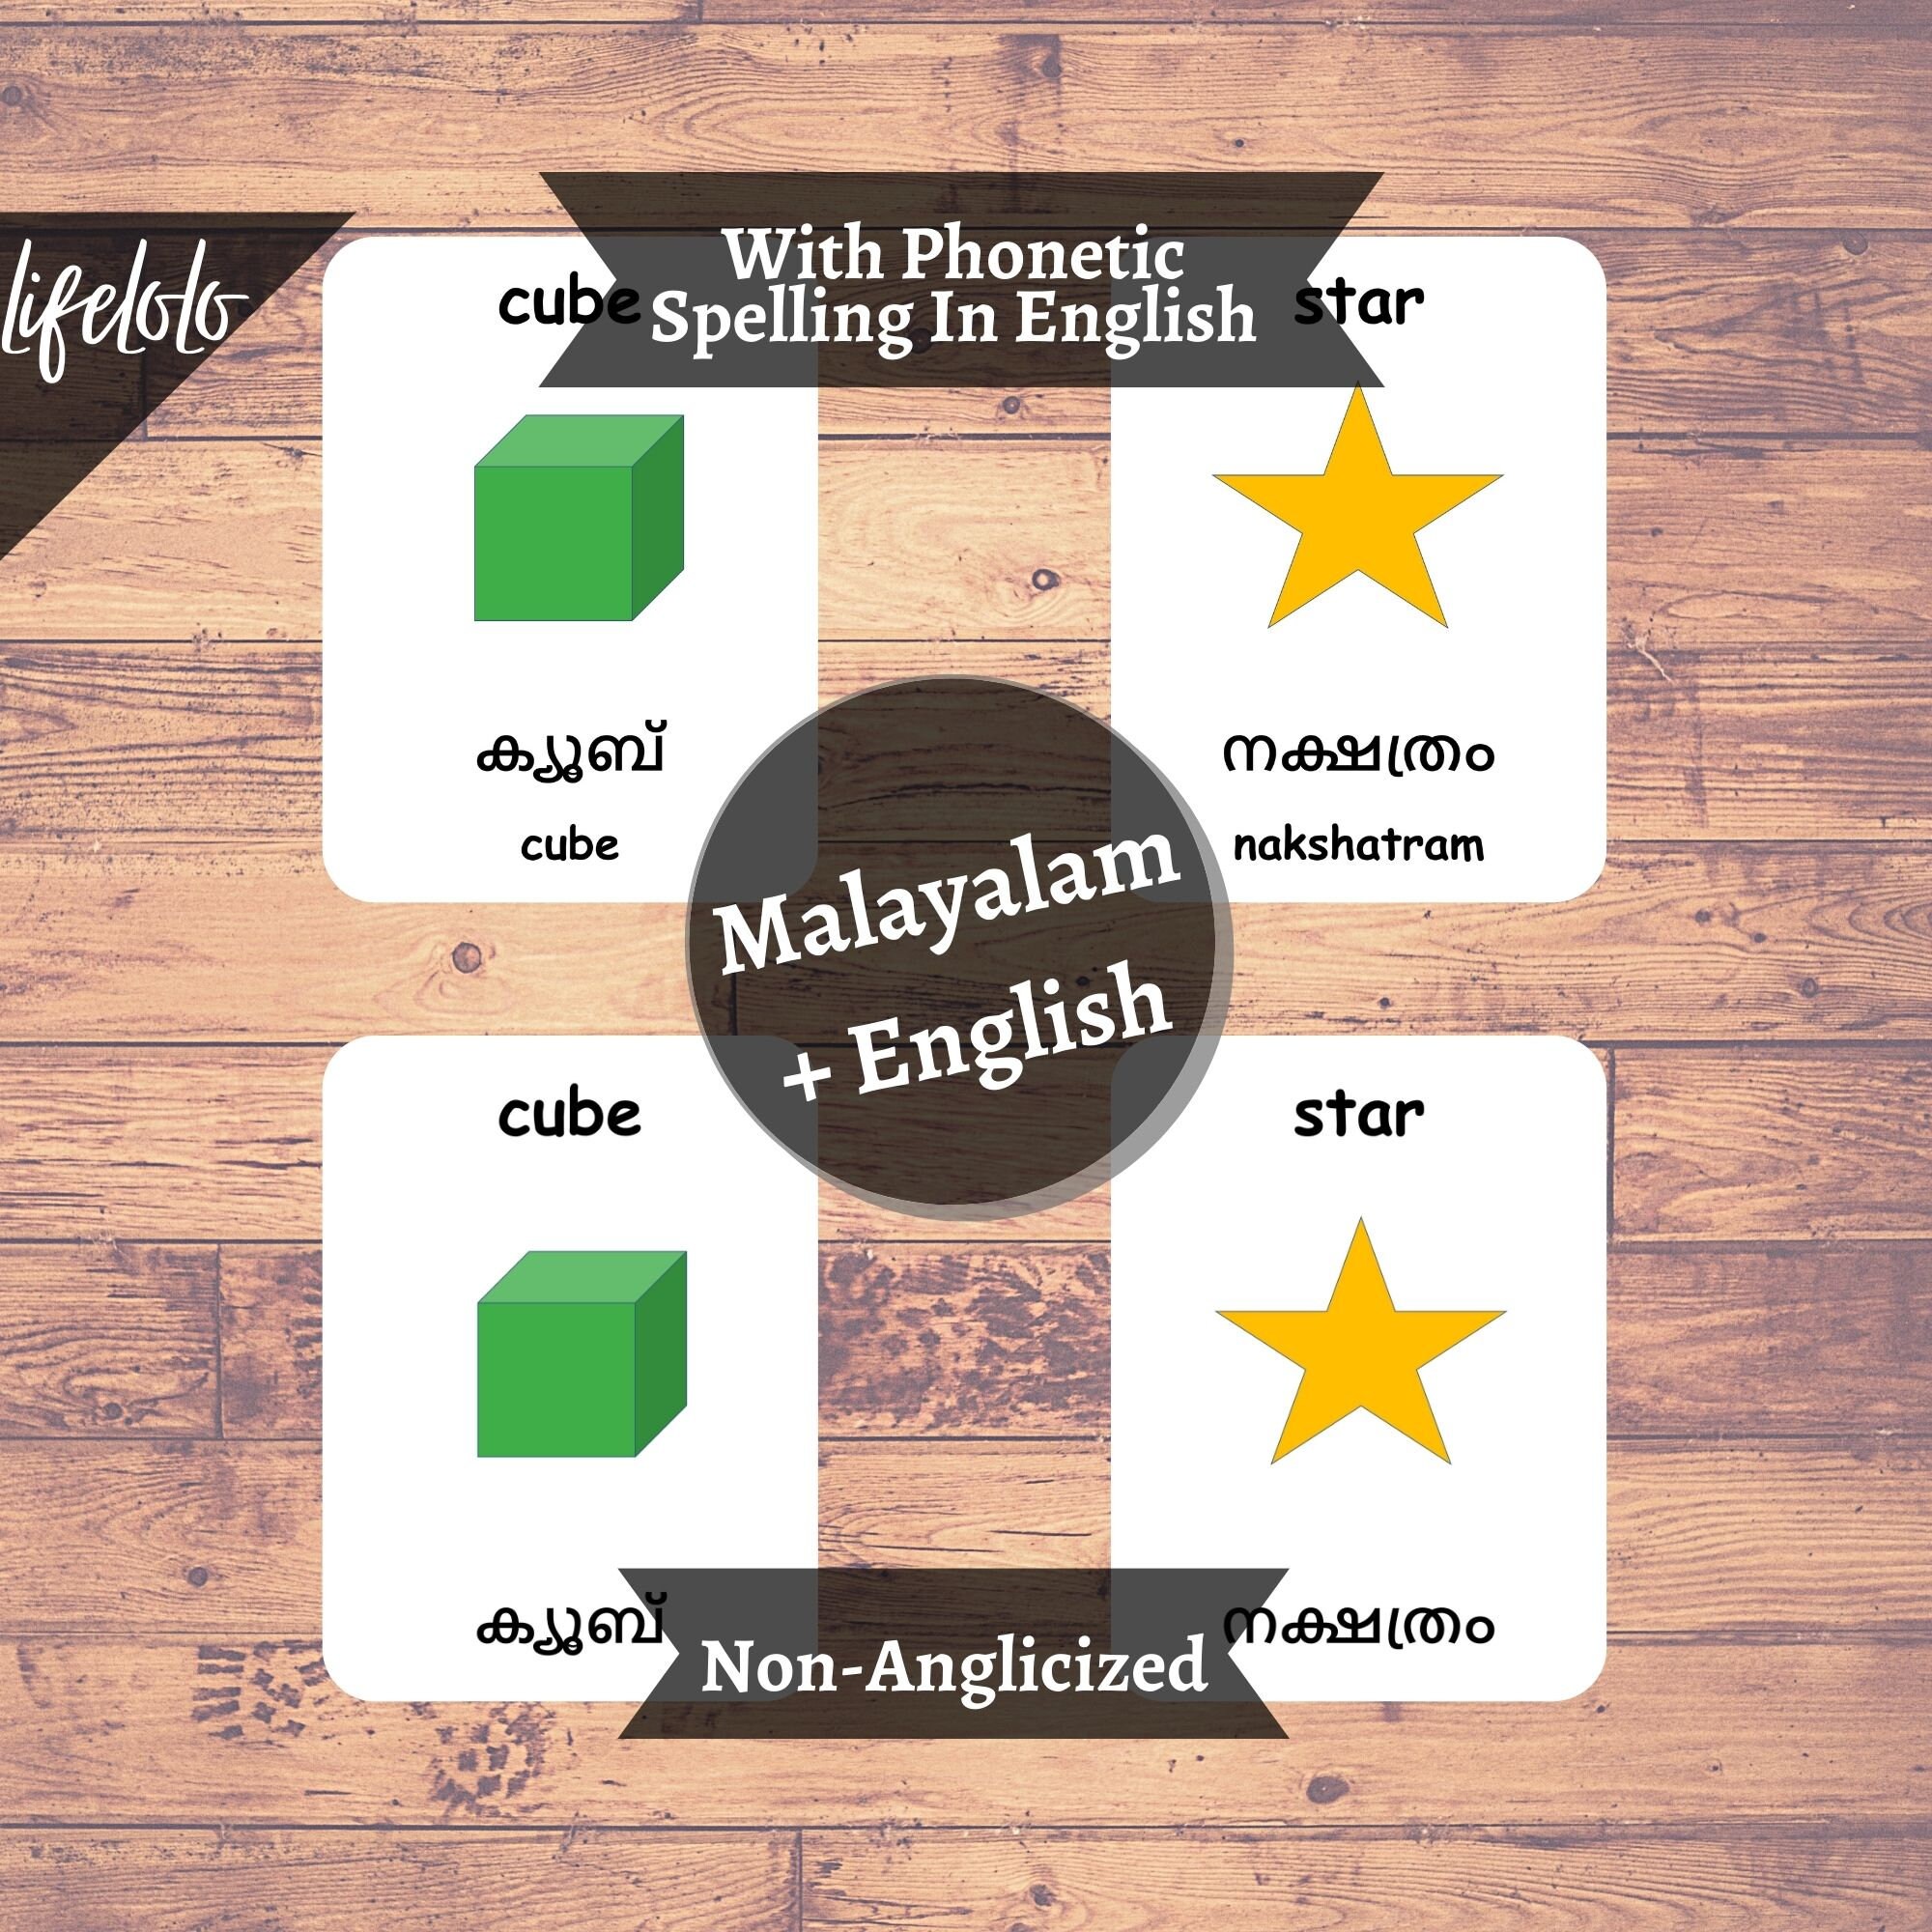 Shapes MALAYALAM Flash Cards English Bilingual Cards Geometric